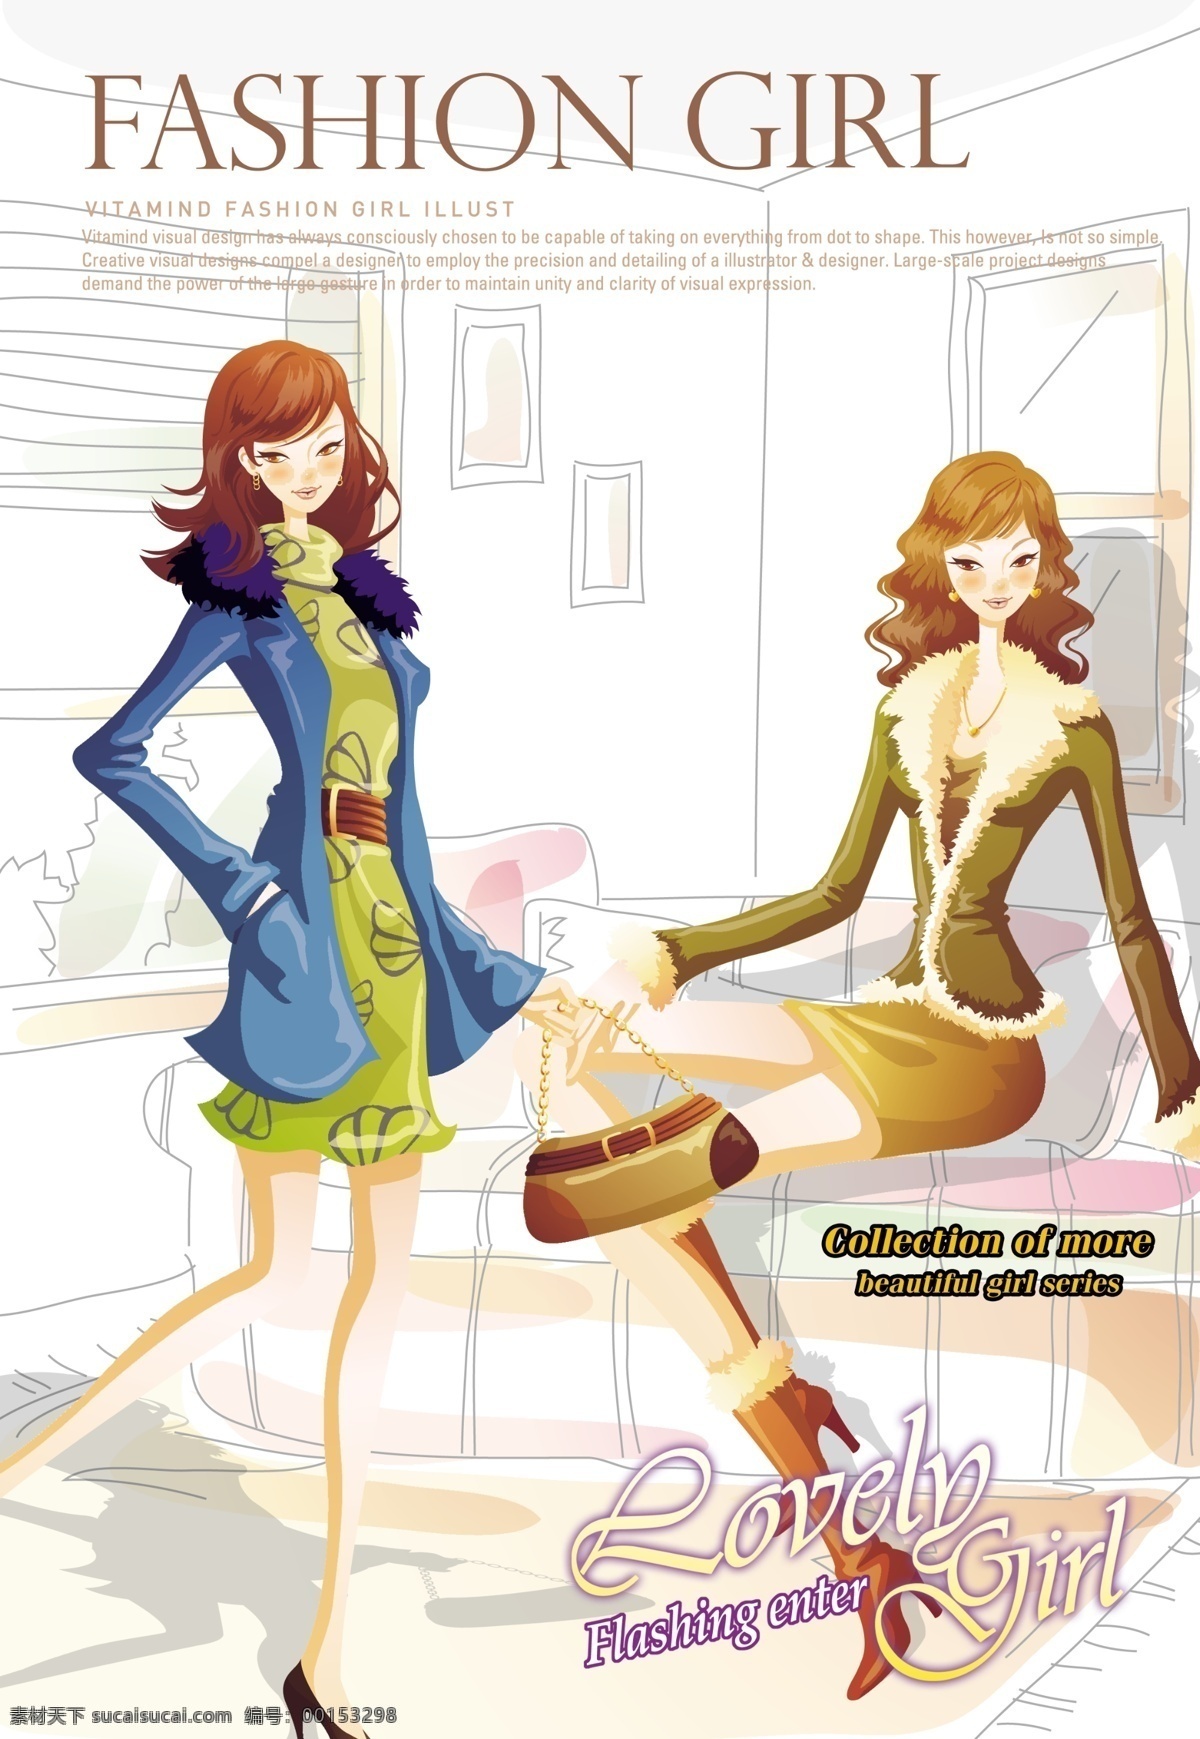 漫画女孩 女孩 漫画 剪影 家具 服饰 超市 服装 时尚 典雅 海报 展板